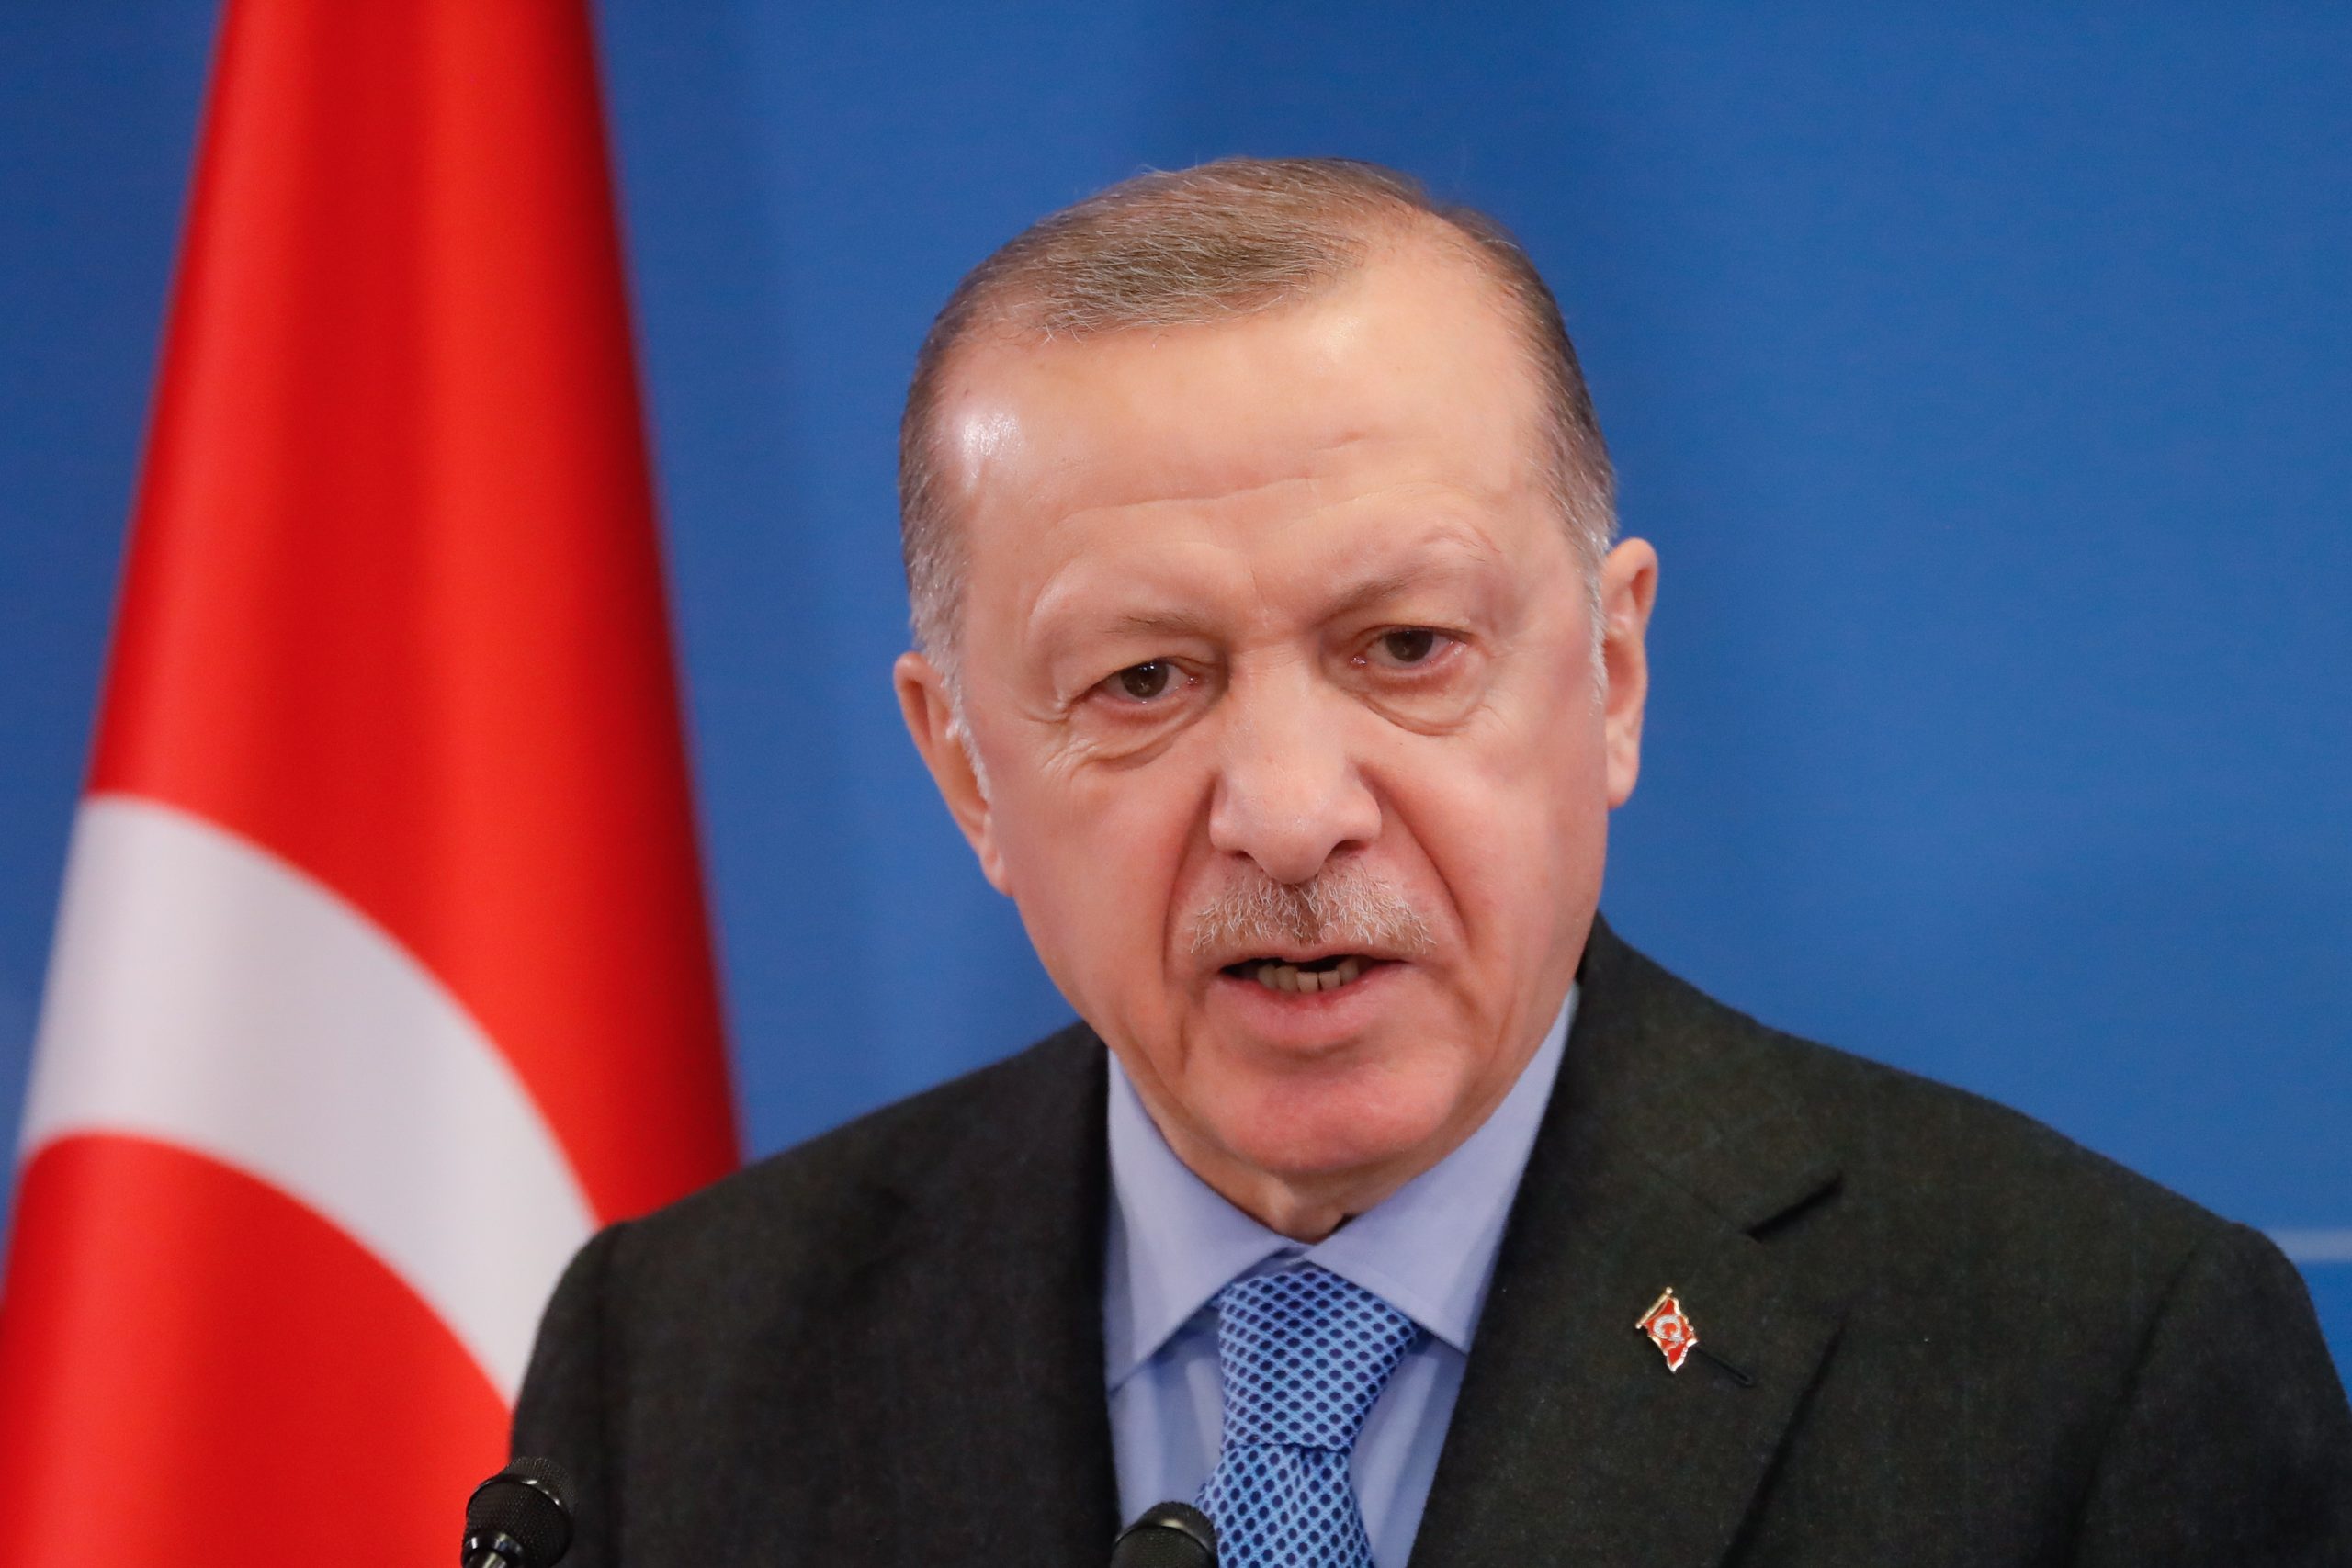 De Turkse president Recep Erdogan tijdens een NAVO-bijeenkomst in Brussel in maart 2022. Foto: EPA/STEPHANIE LECOCQ